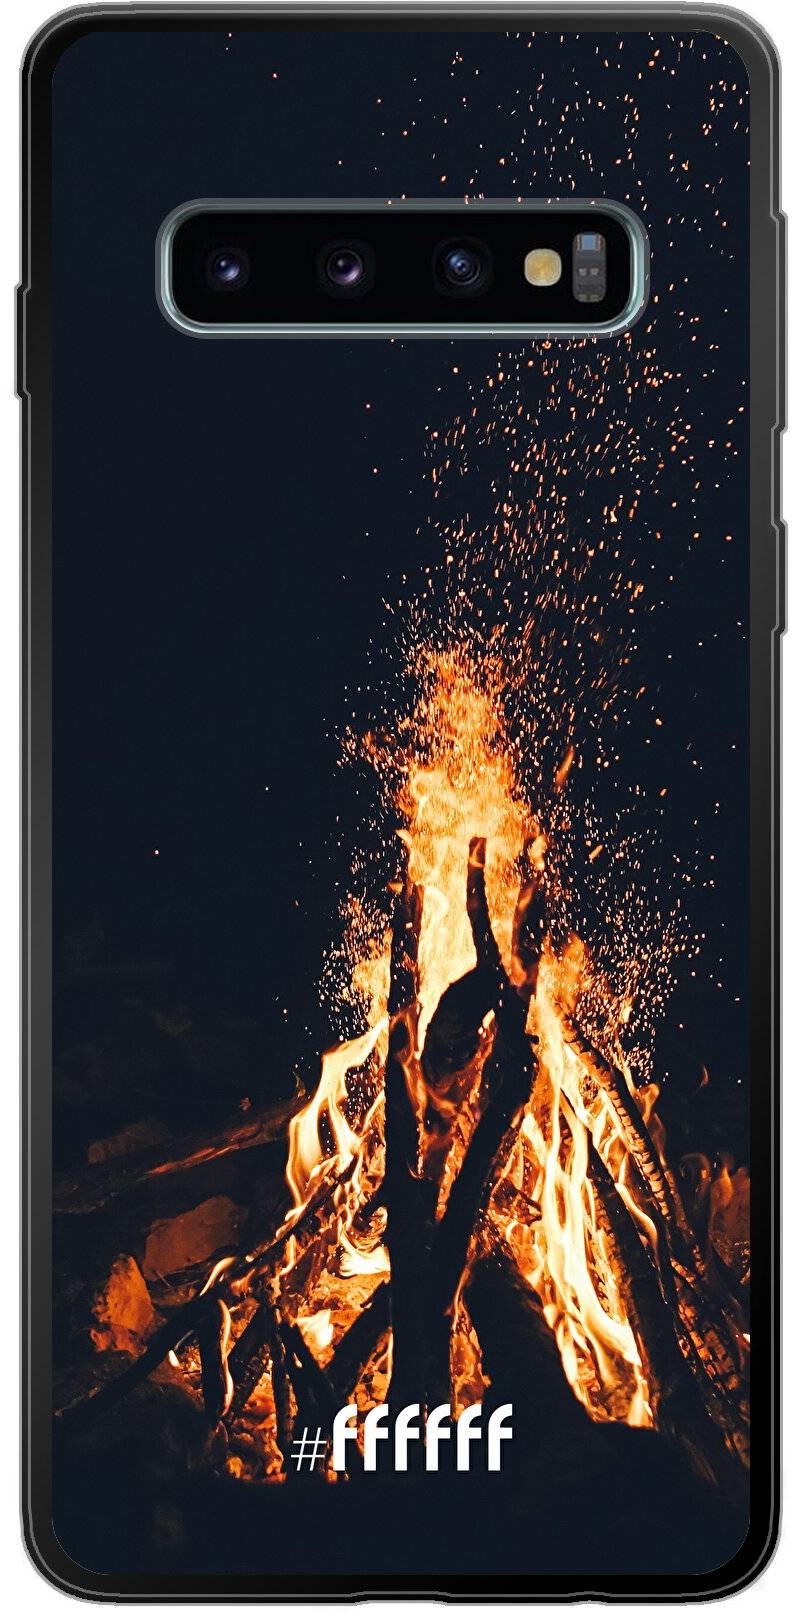 Bonfire Galaxy S10